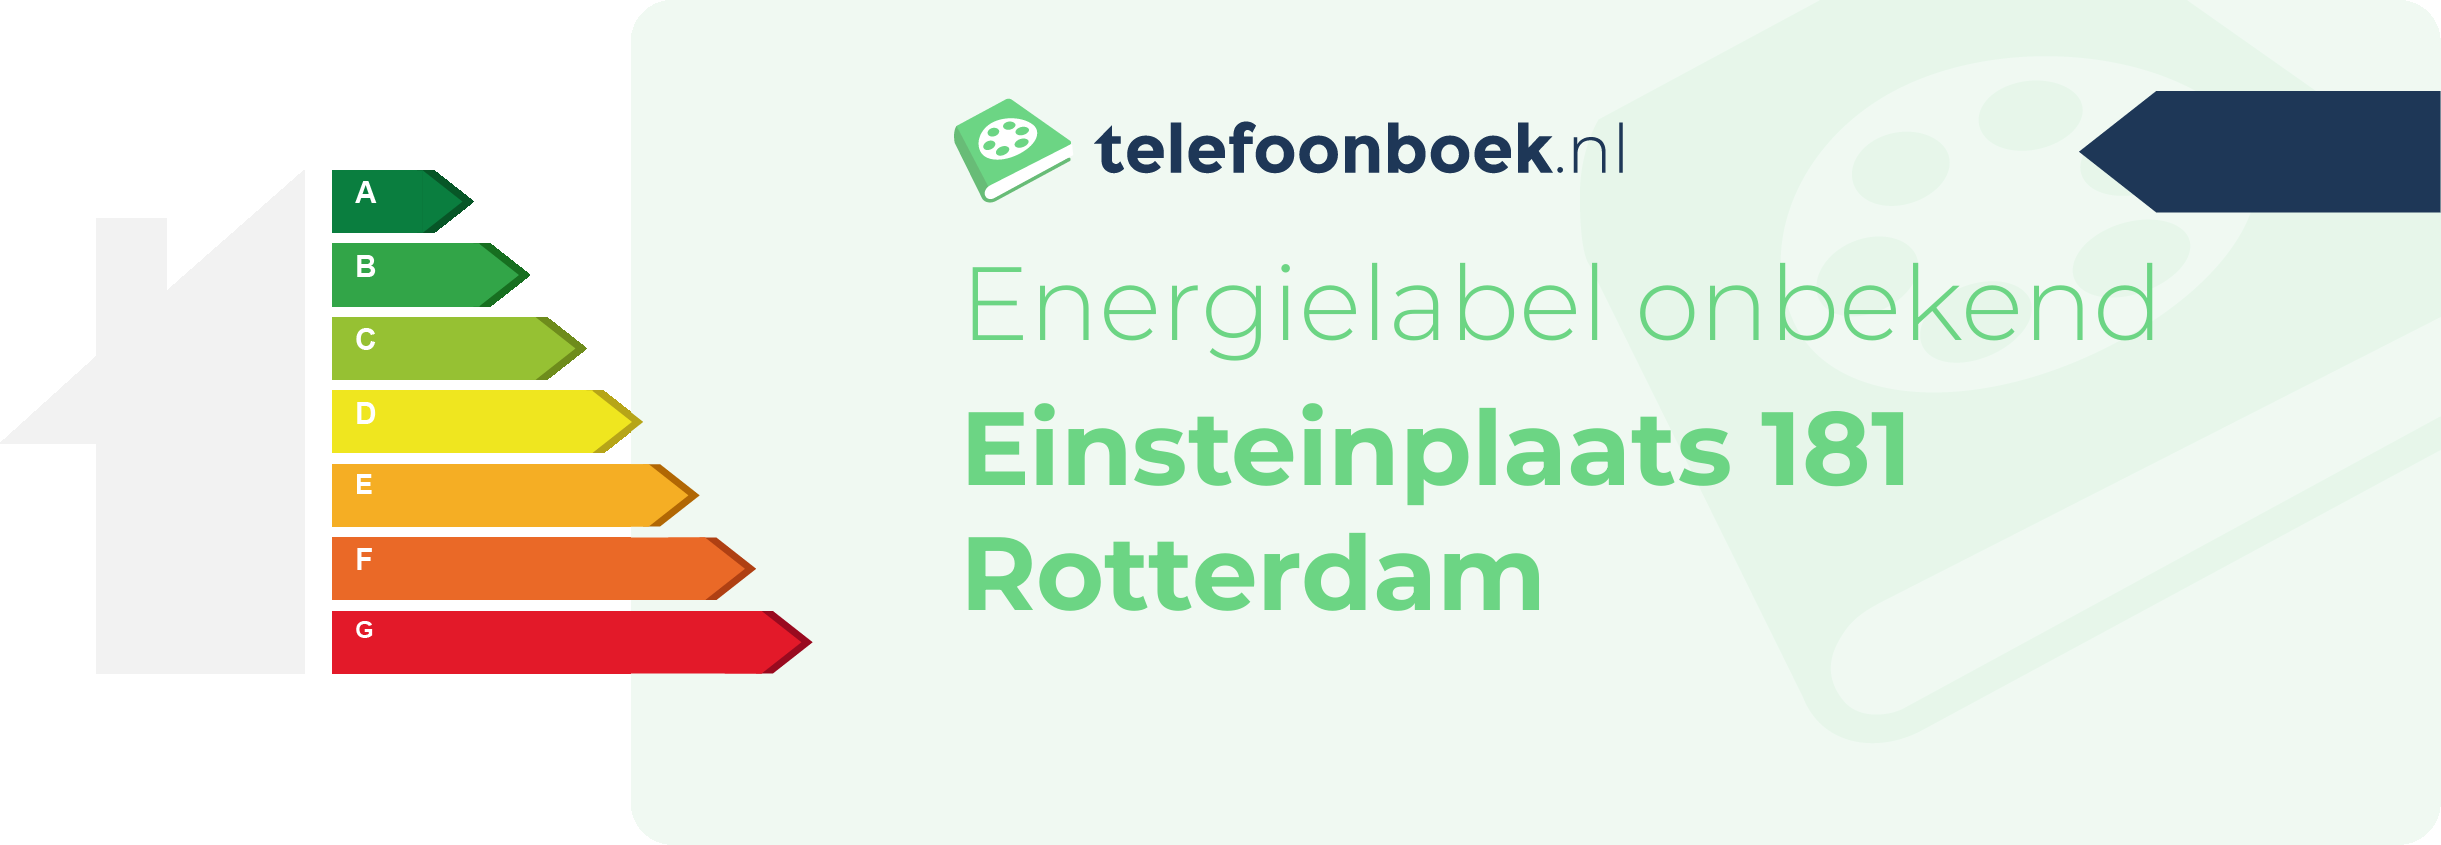 Energielabel Einsteinplaats 181 Rotterdam